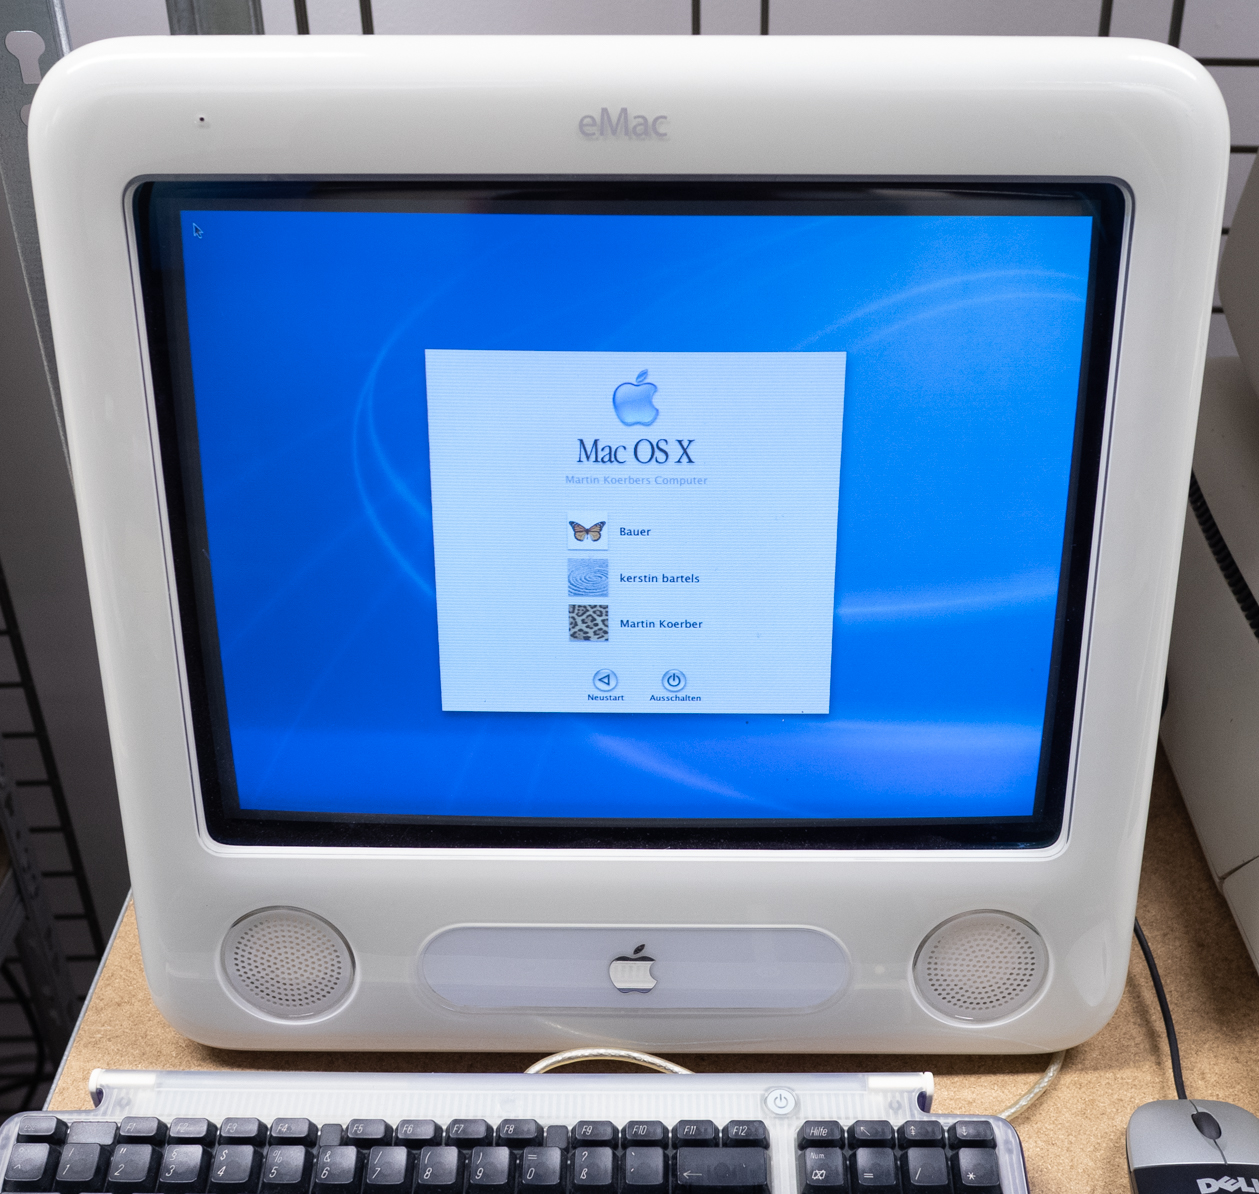 Der eMac ist ein von Apple Computer Inc. und ursprünglich nur für den Bildungsmarkt konzipierter Computer. Er wurde im April 2002 der Öffentlichkeit vorgestellt.

Der eMac kann als Nachfolger des iMac G3 angesehen werden, denn er hat das gleiche Komplettrechner-Design mit Rechner und Monitor in einem Gehäuse wie dieser, allerdings einen größeren 17″-Röhren (CRT)-Monitor und einen Wechsel auf die nächsthöhere Prozessorgeneration.